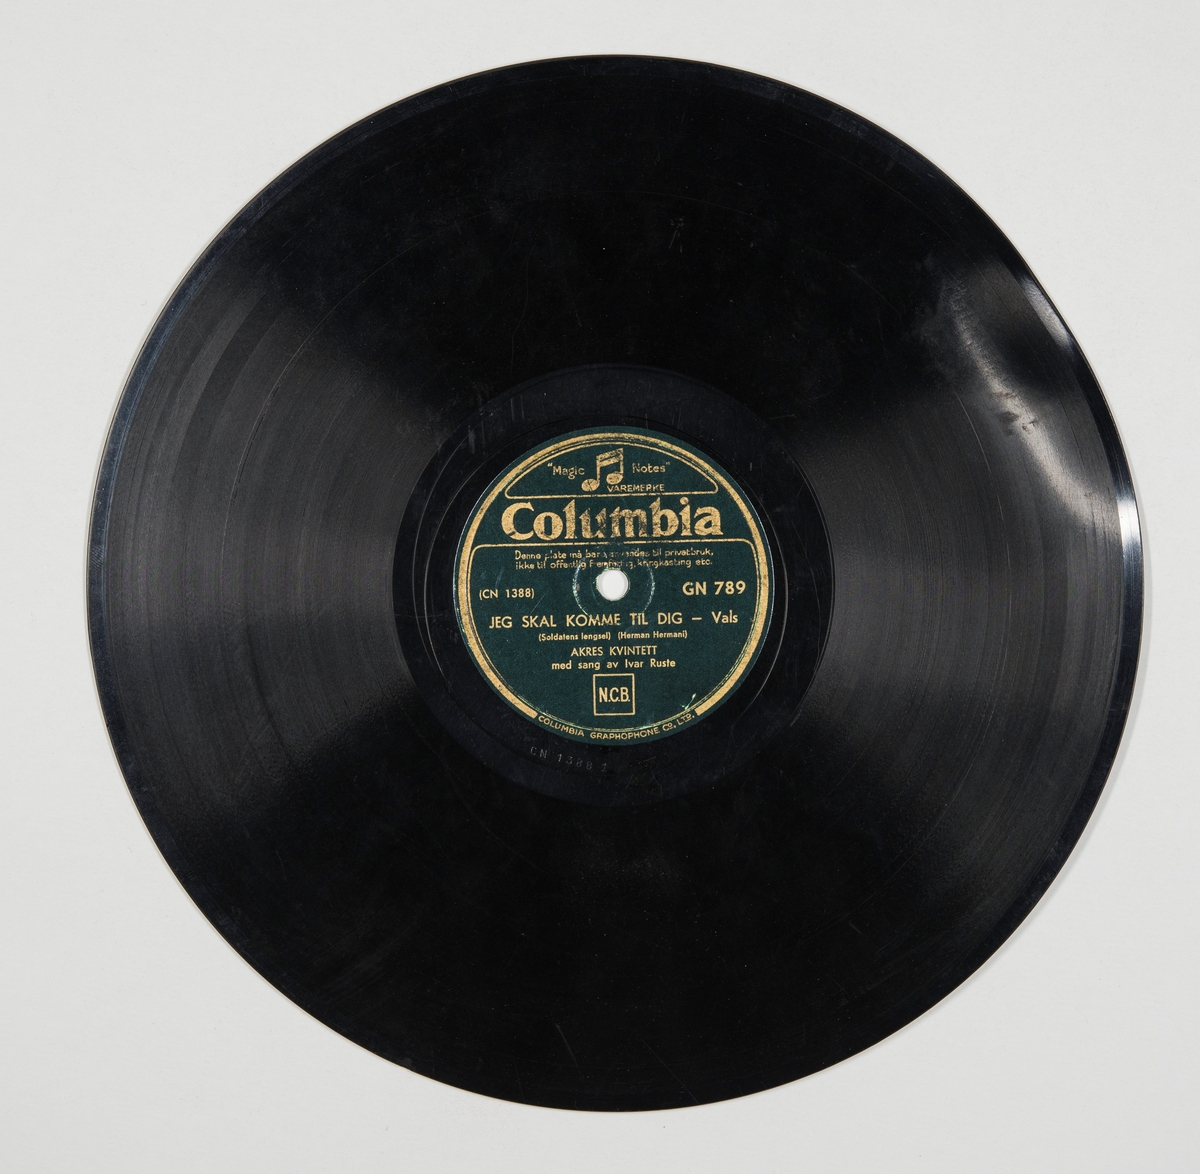 Grammofonplate fremstilt av skjellakk med plateomslag av papir.
